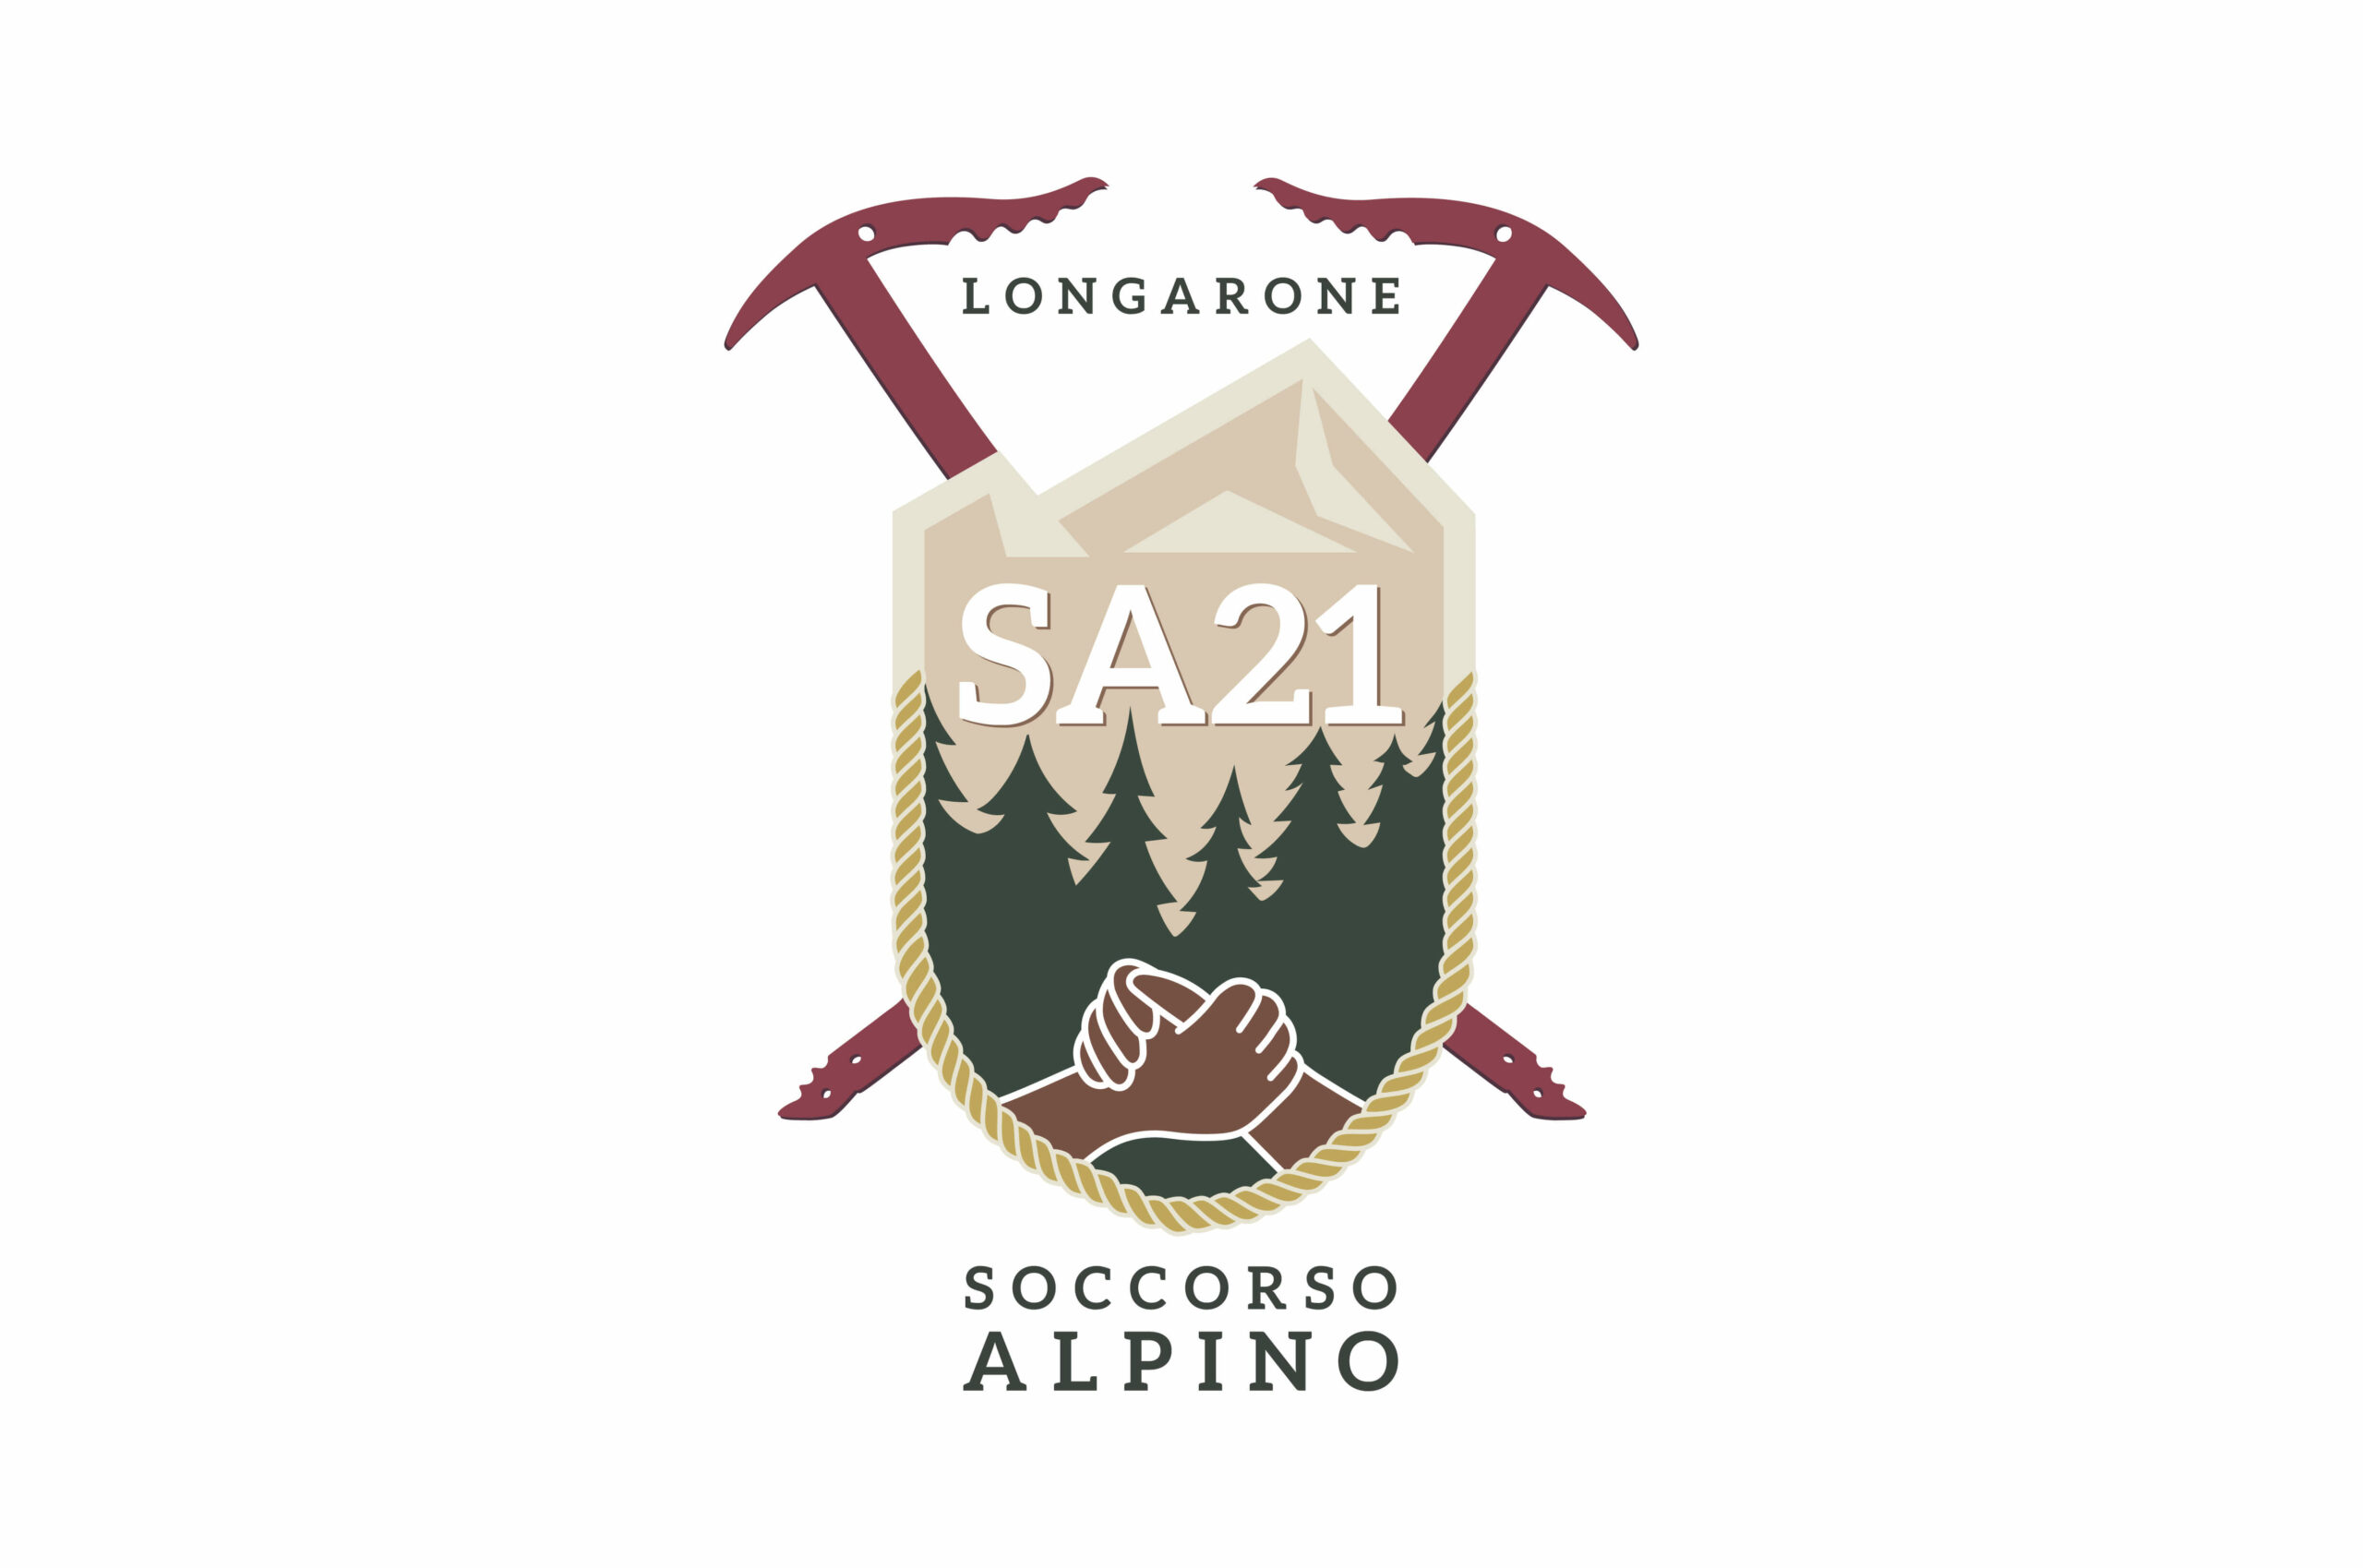 soccorso-alpino-longarone1(1)